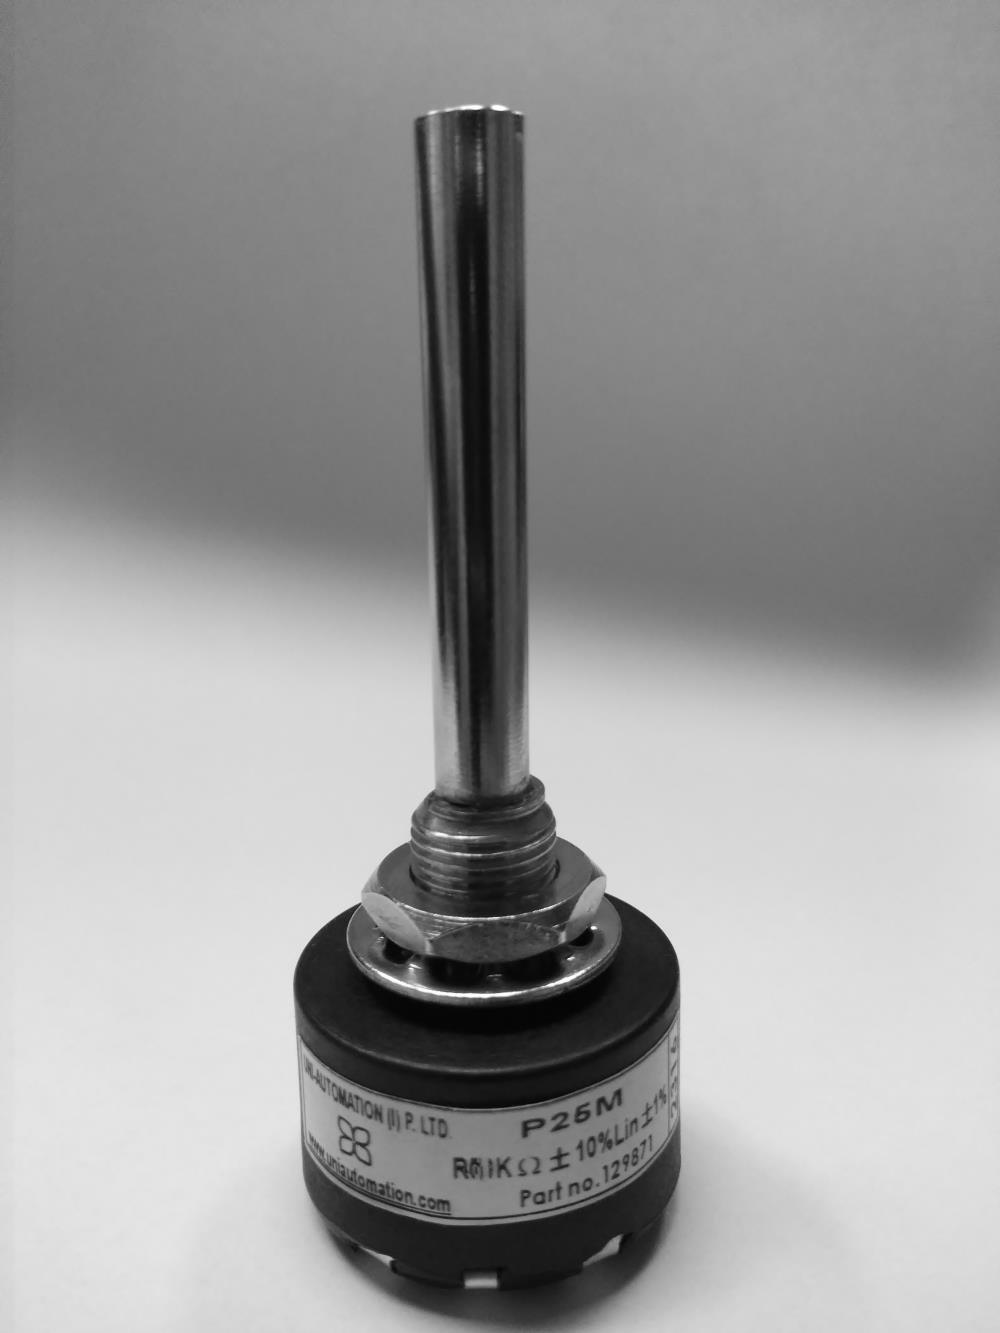 P25M 500OHM (P25M -Tel Sarımlı Potansiyometre-8)